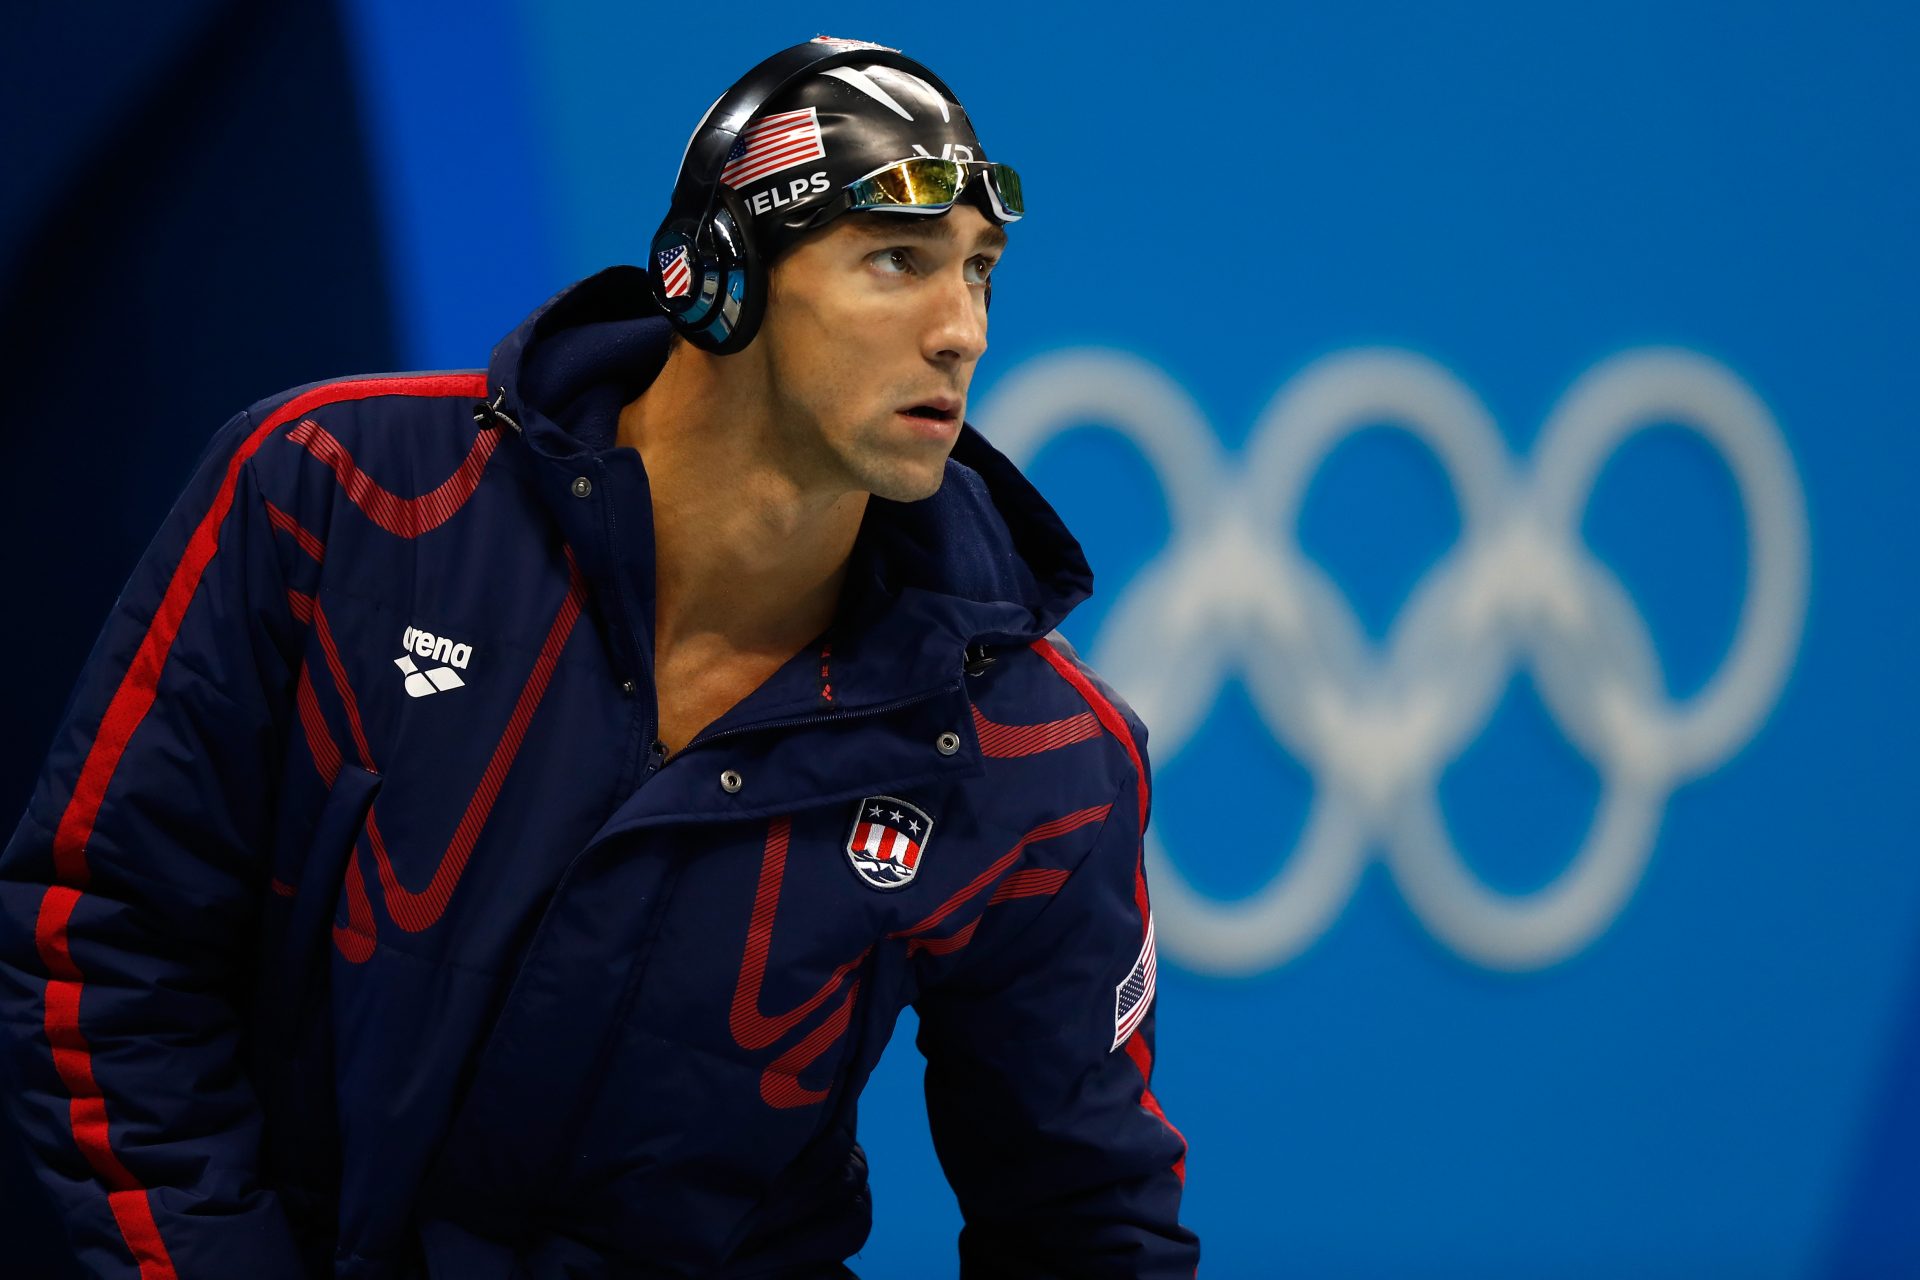 1. Michael Phelps - 23 titres (28 médailles)